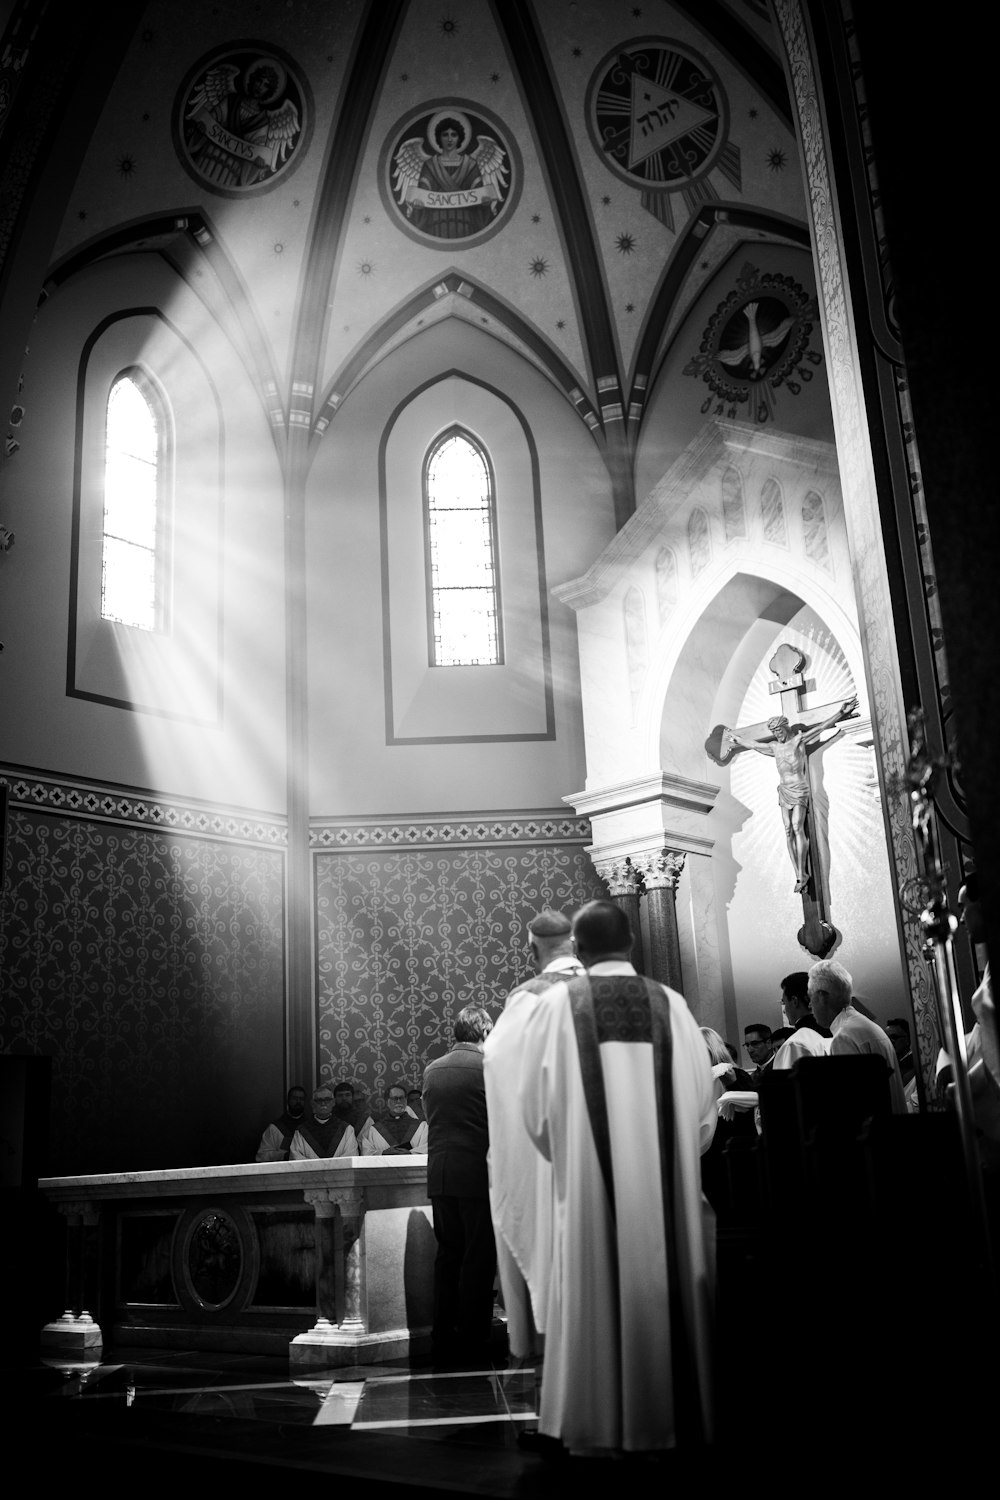 Una foto en blanco y negro de personas en una iglesia